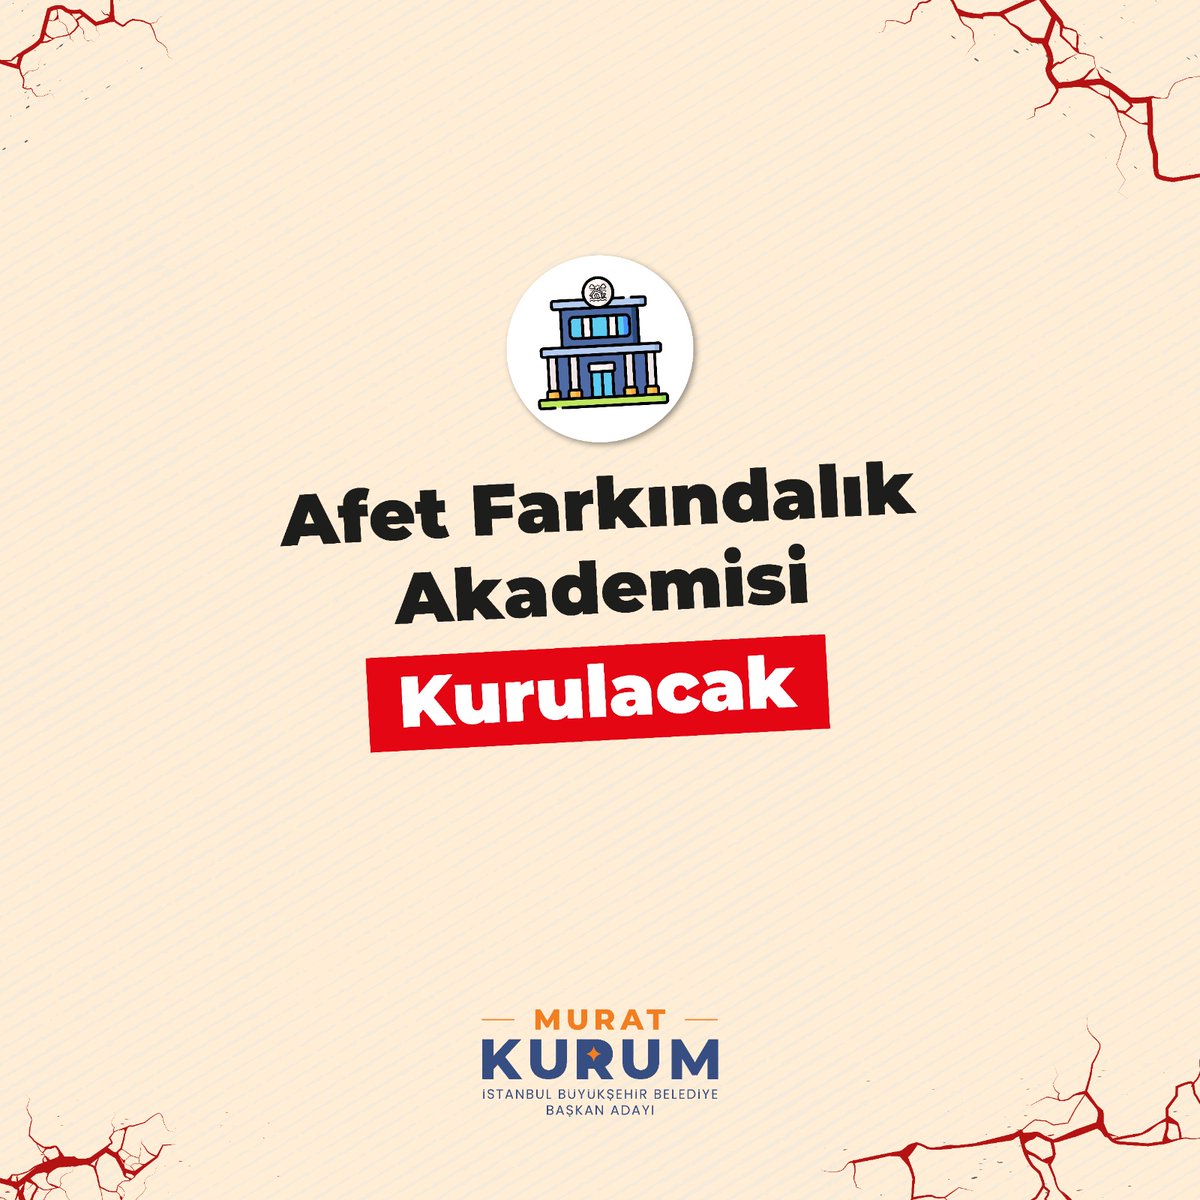 #SağlamAdam Murat Kurum